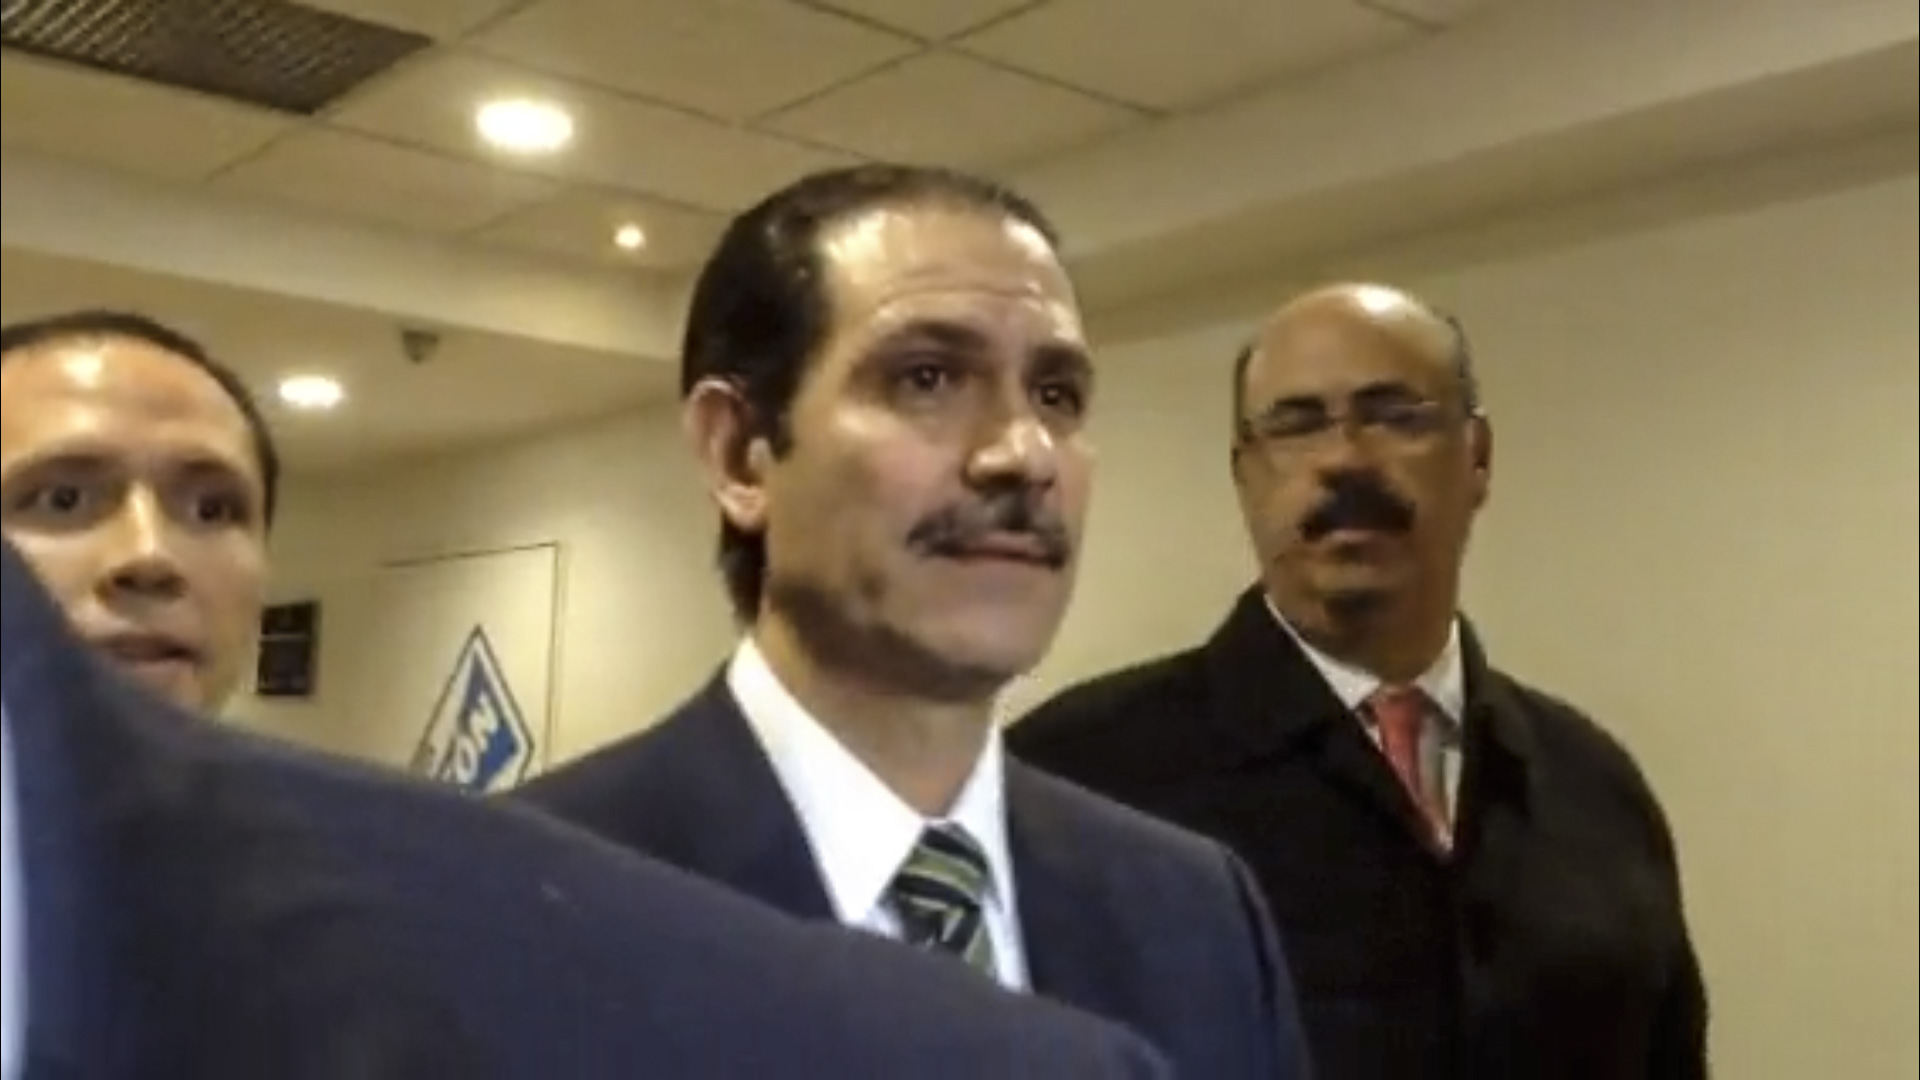 El ex gobernador de Sonora acompañado en todo momento por su abogado Antonio Gracia. FOTO: CUARTOSCURO.COM